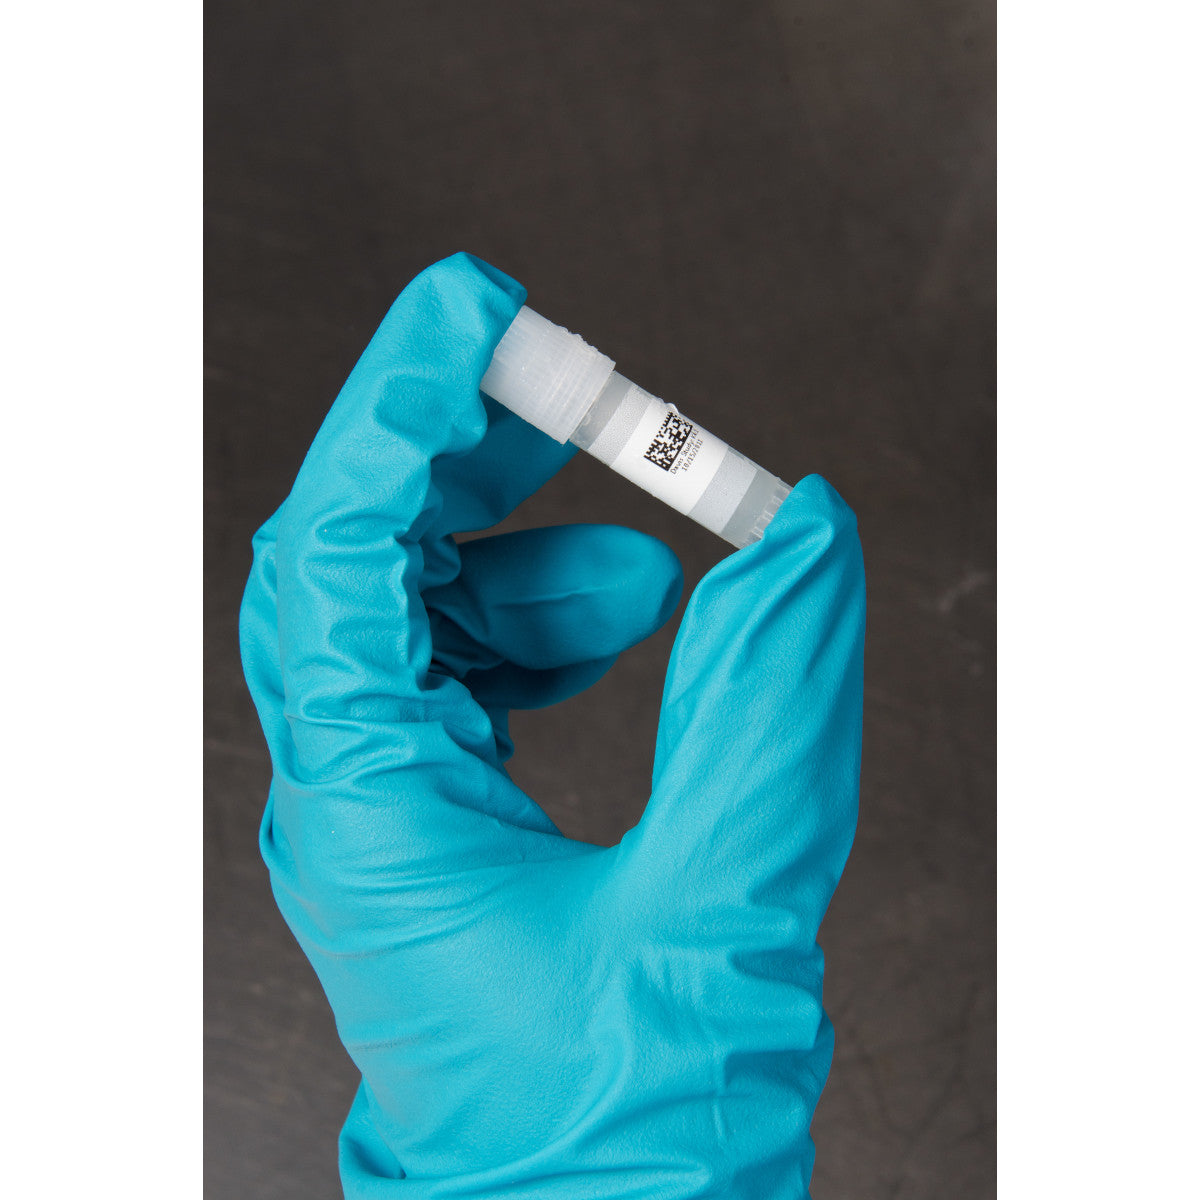 804786 - Etichette per laboratori in poliestere ultra-sottile core 25 mm ROTOLO DA 2500 ETICHETTE